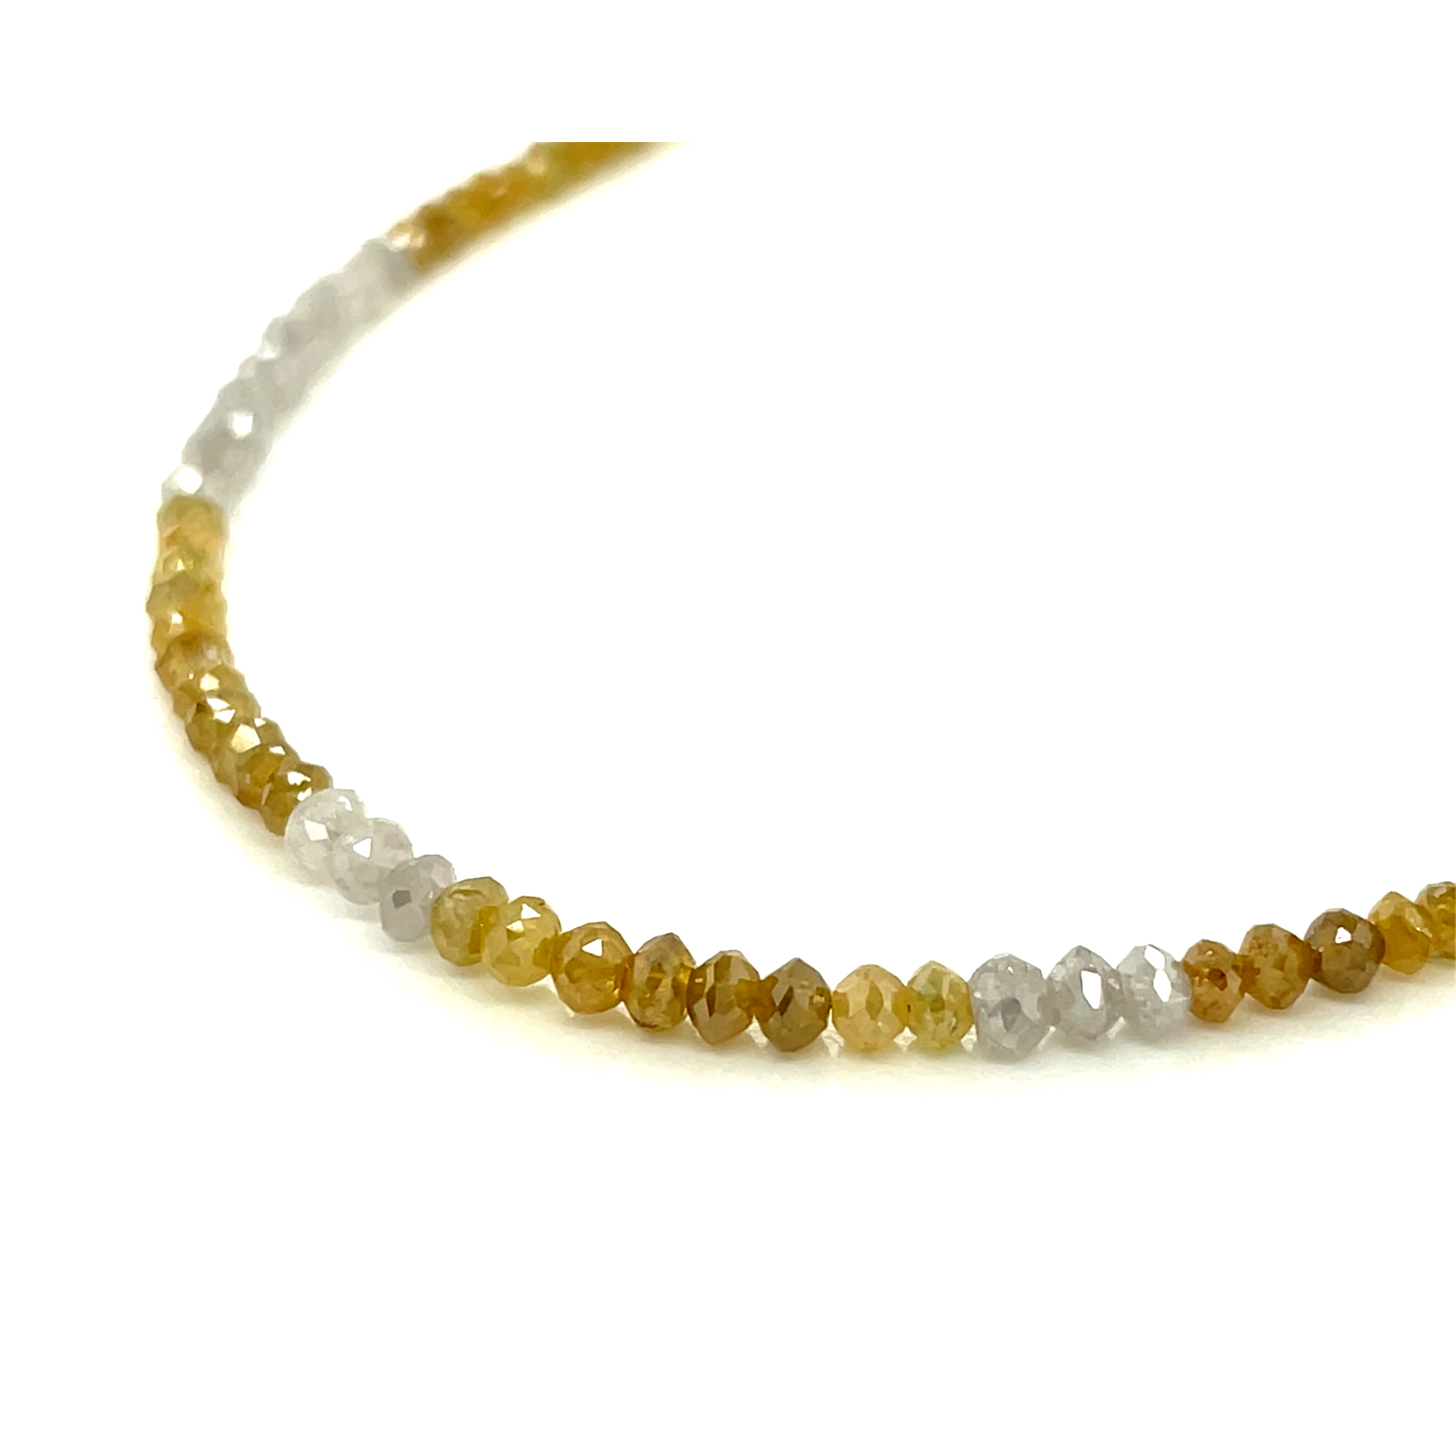 Diamant weiß/gelb Gelbgold 585/000, Edelstein Collier mit Karabinerverschluss,  ca. 15 ct. , Sogni d'oro 